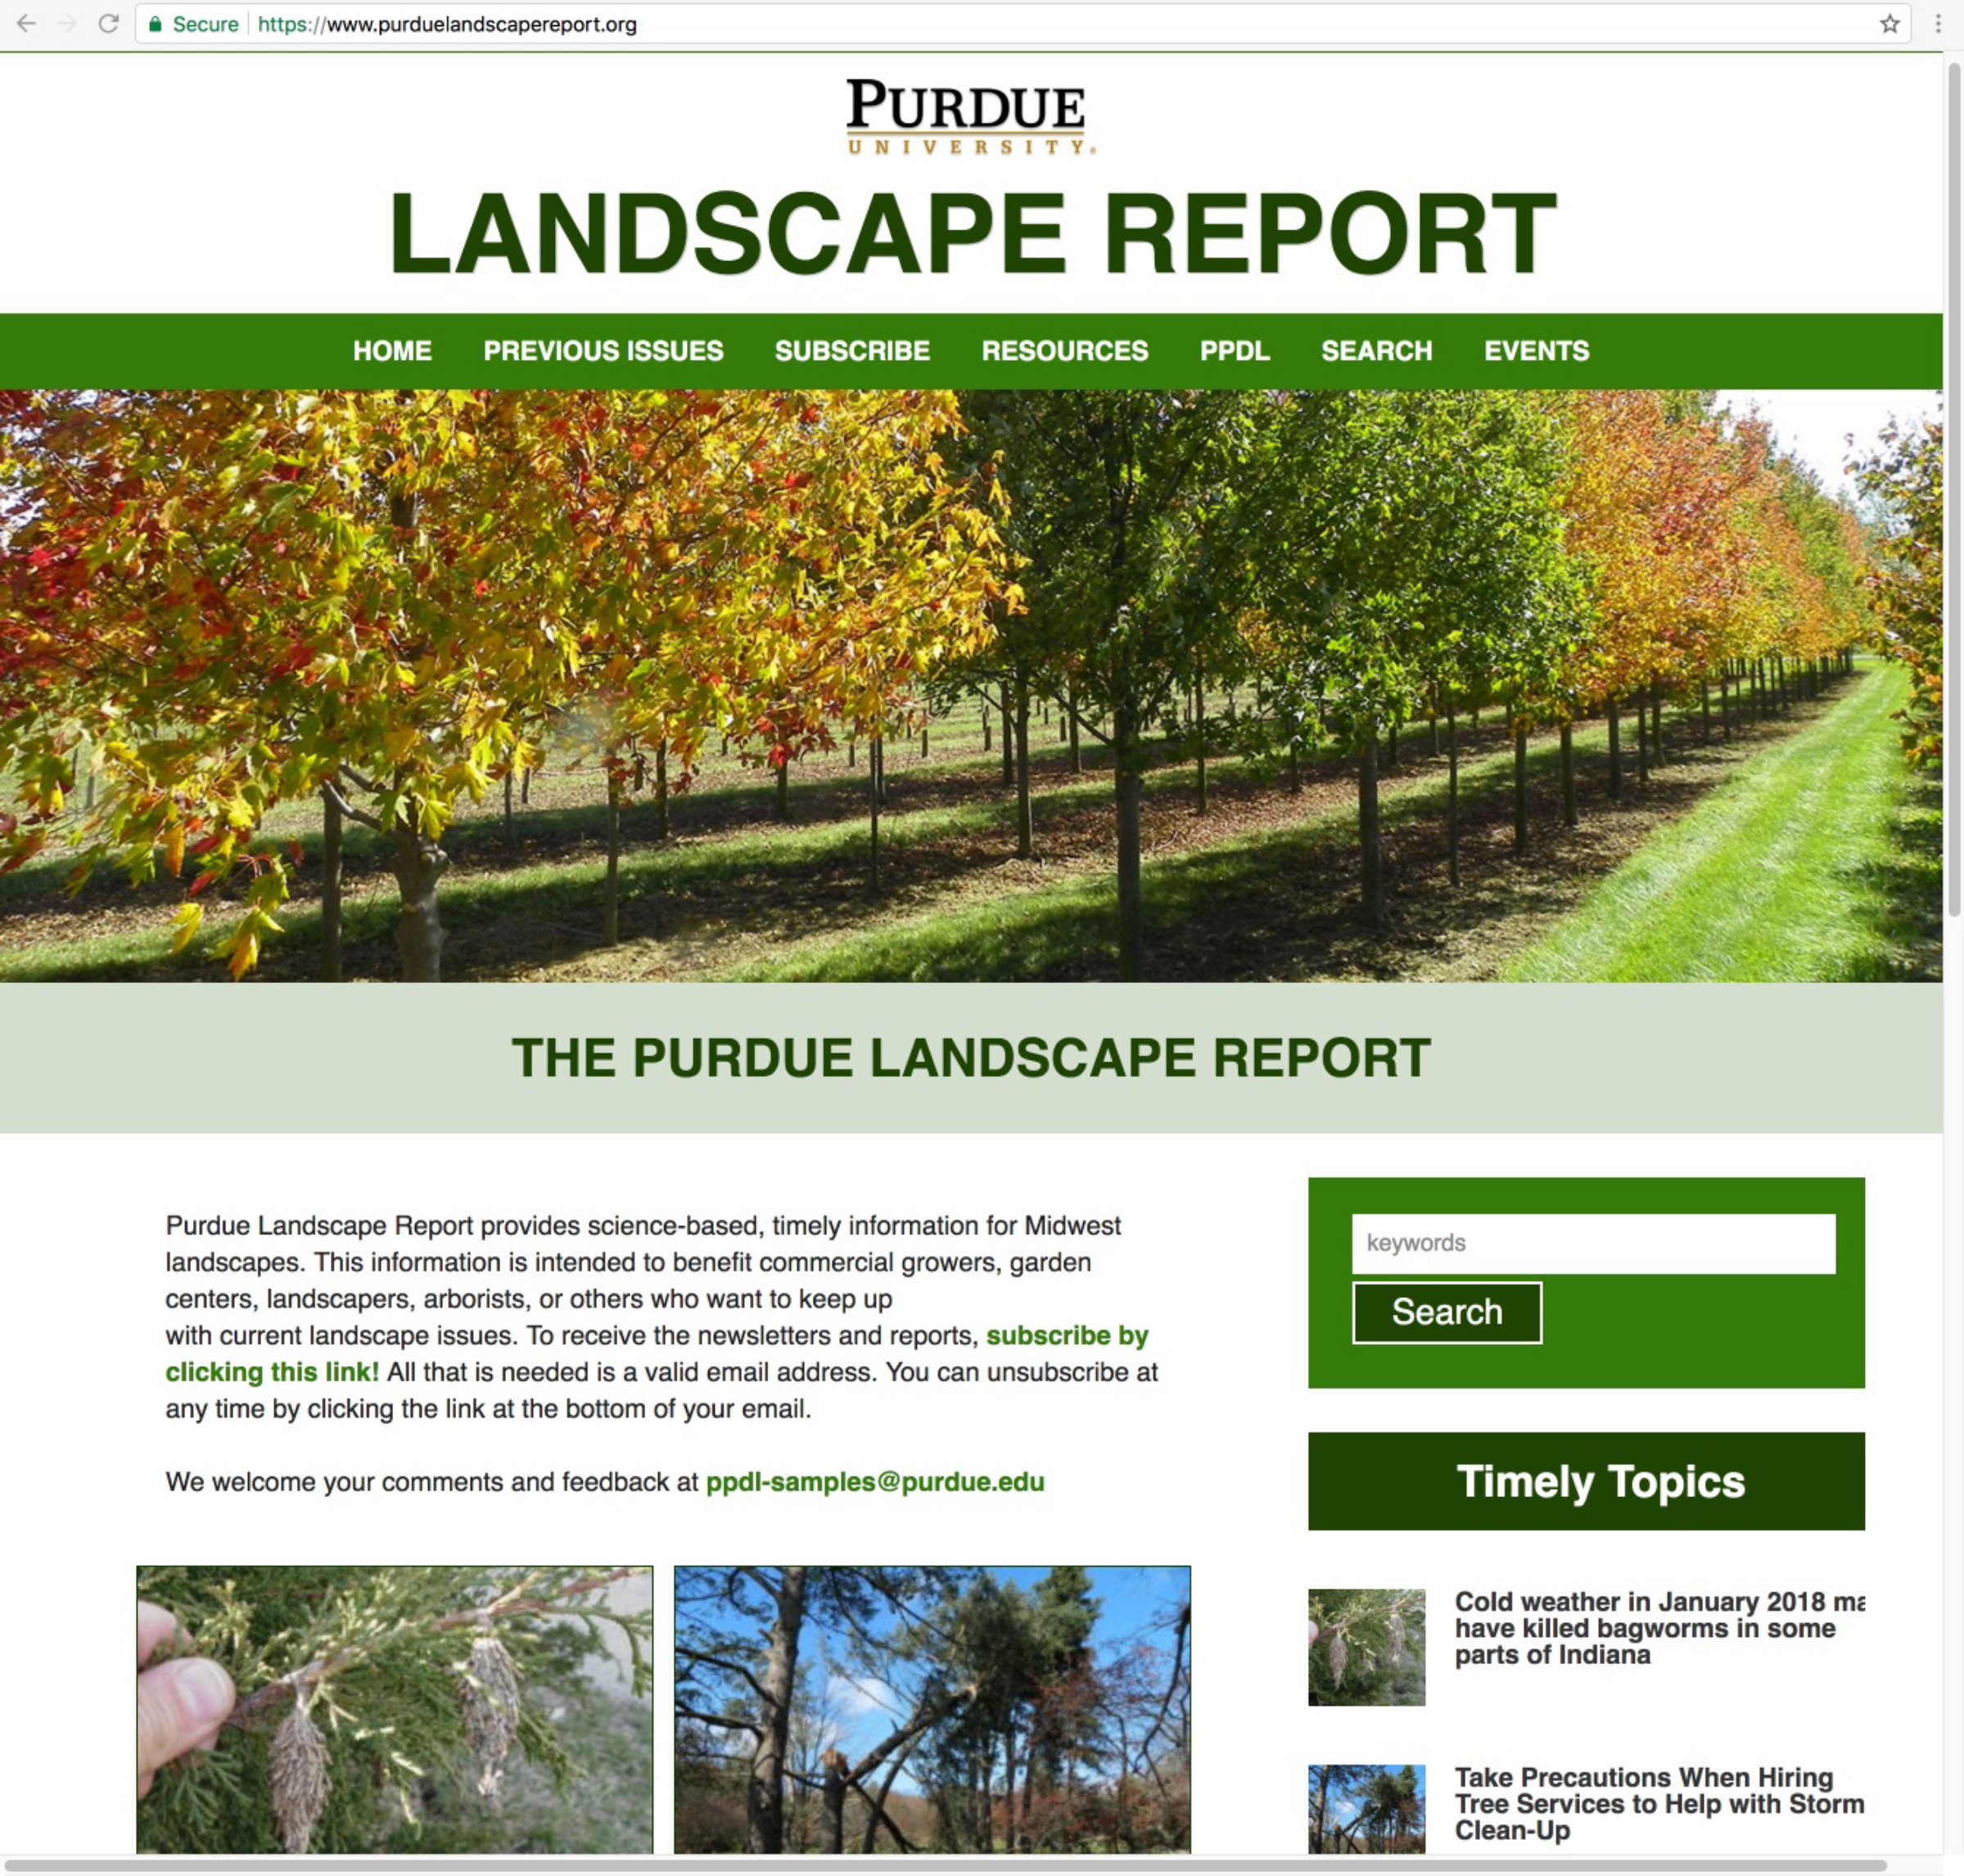 Purdue Landscape Report webpage